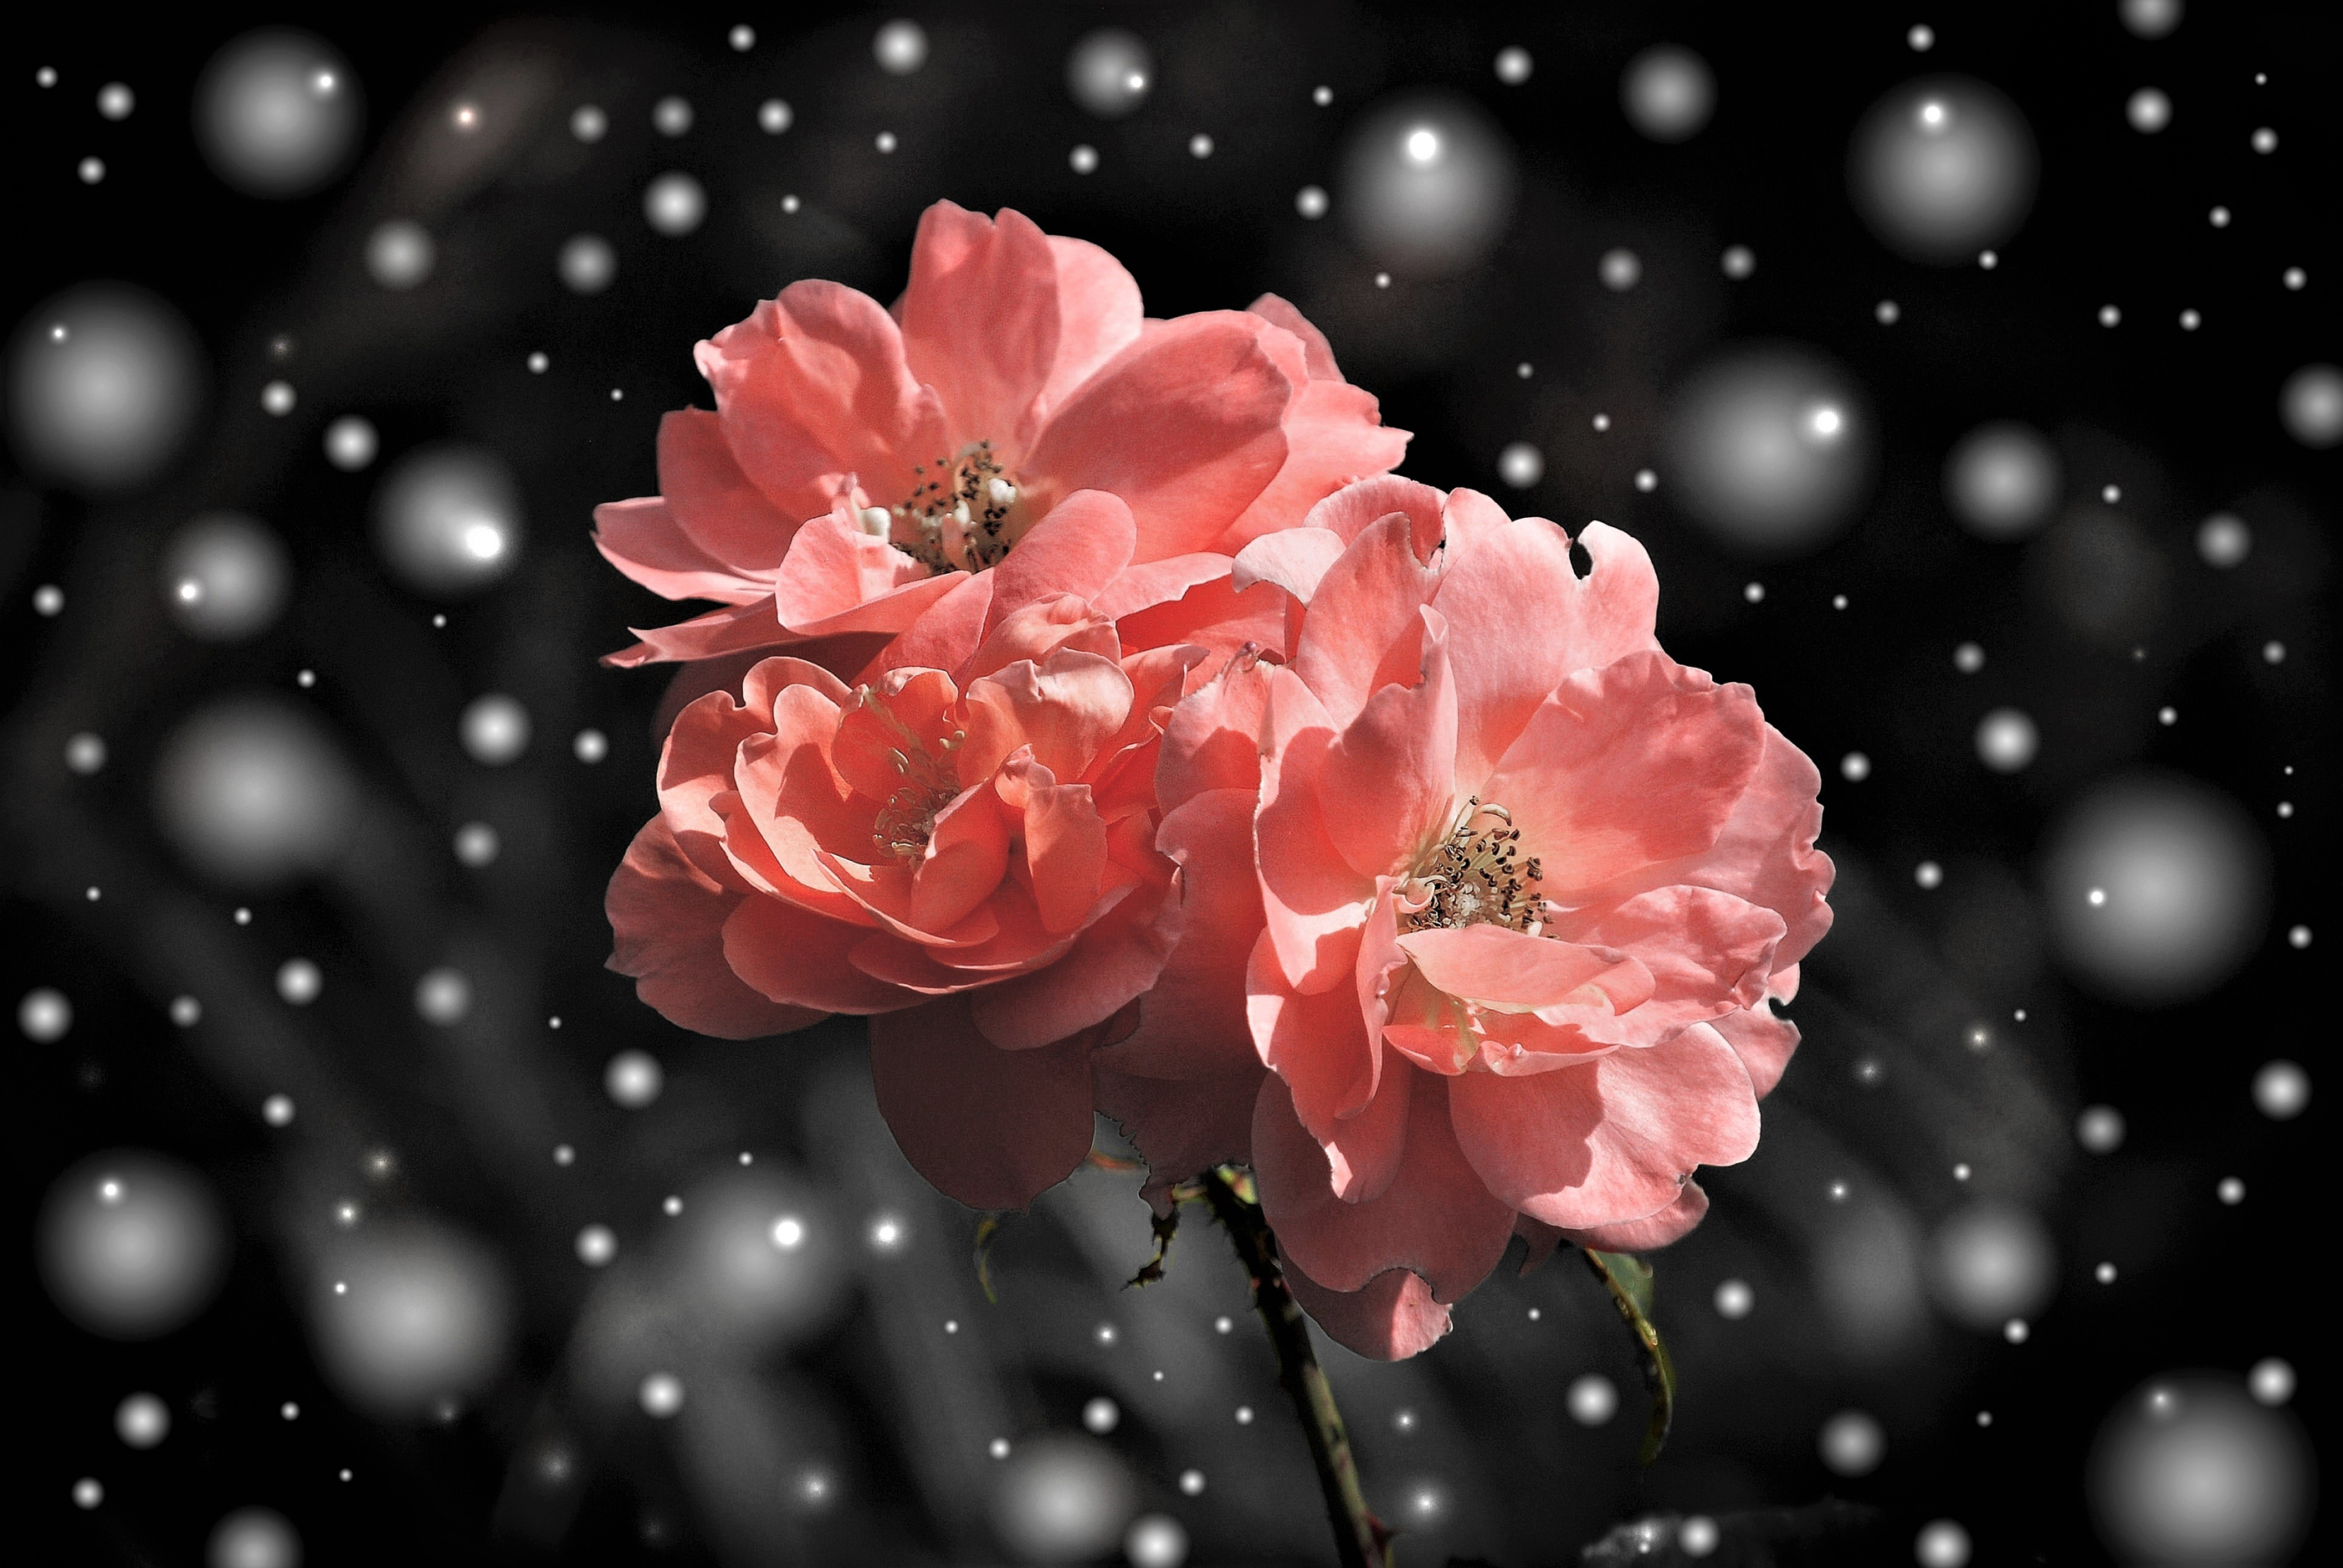 Скачать обои бесплатно Снег, Снежинки, Цветок, Роза, Снегопад, Земля/природа, Розовая Роза, Флауэрсы картинка на рабочий стол ПК